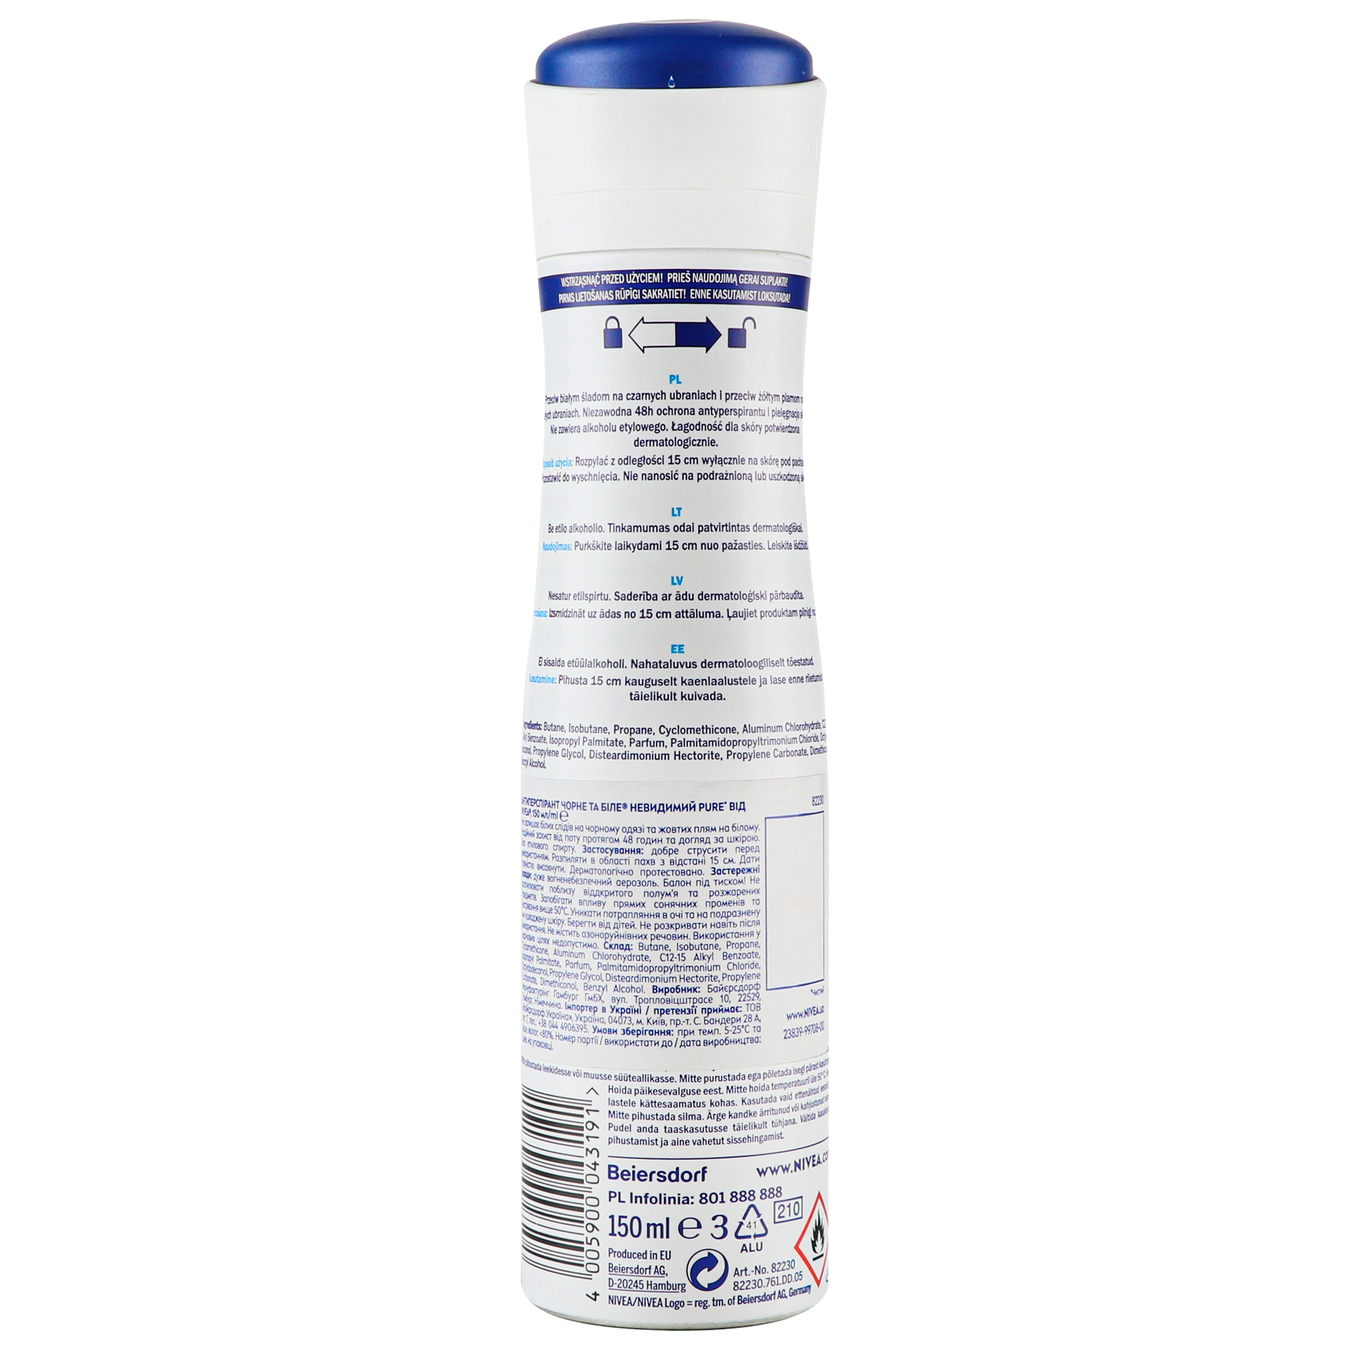 Deodorant Nivea for women Invisible Pure Invisible Protection spray 150ml 3